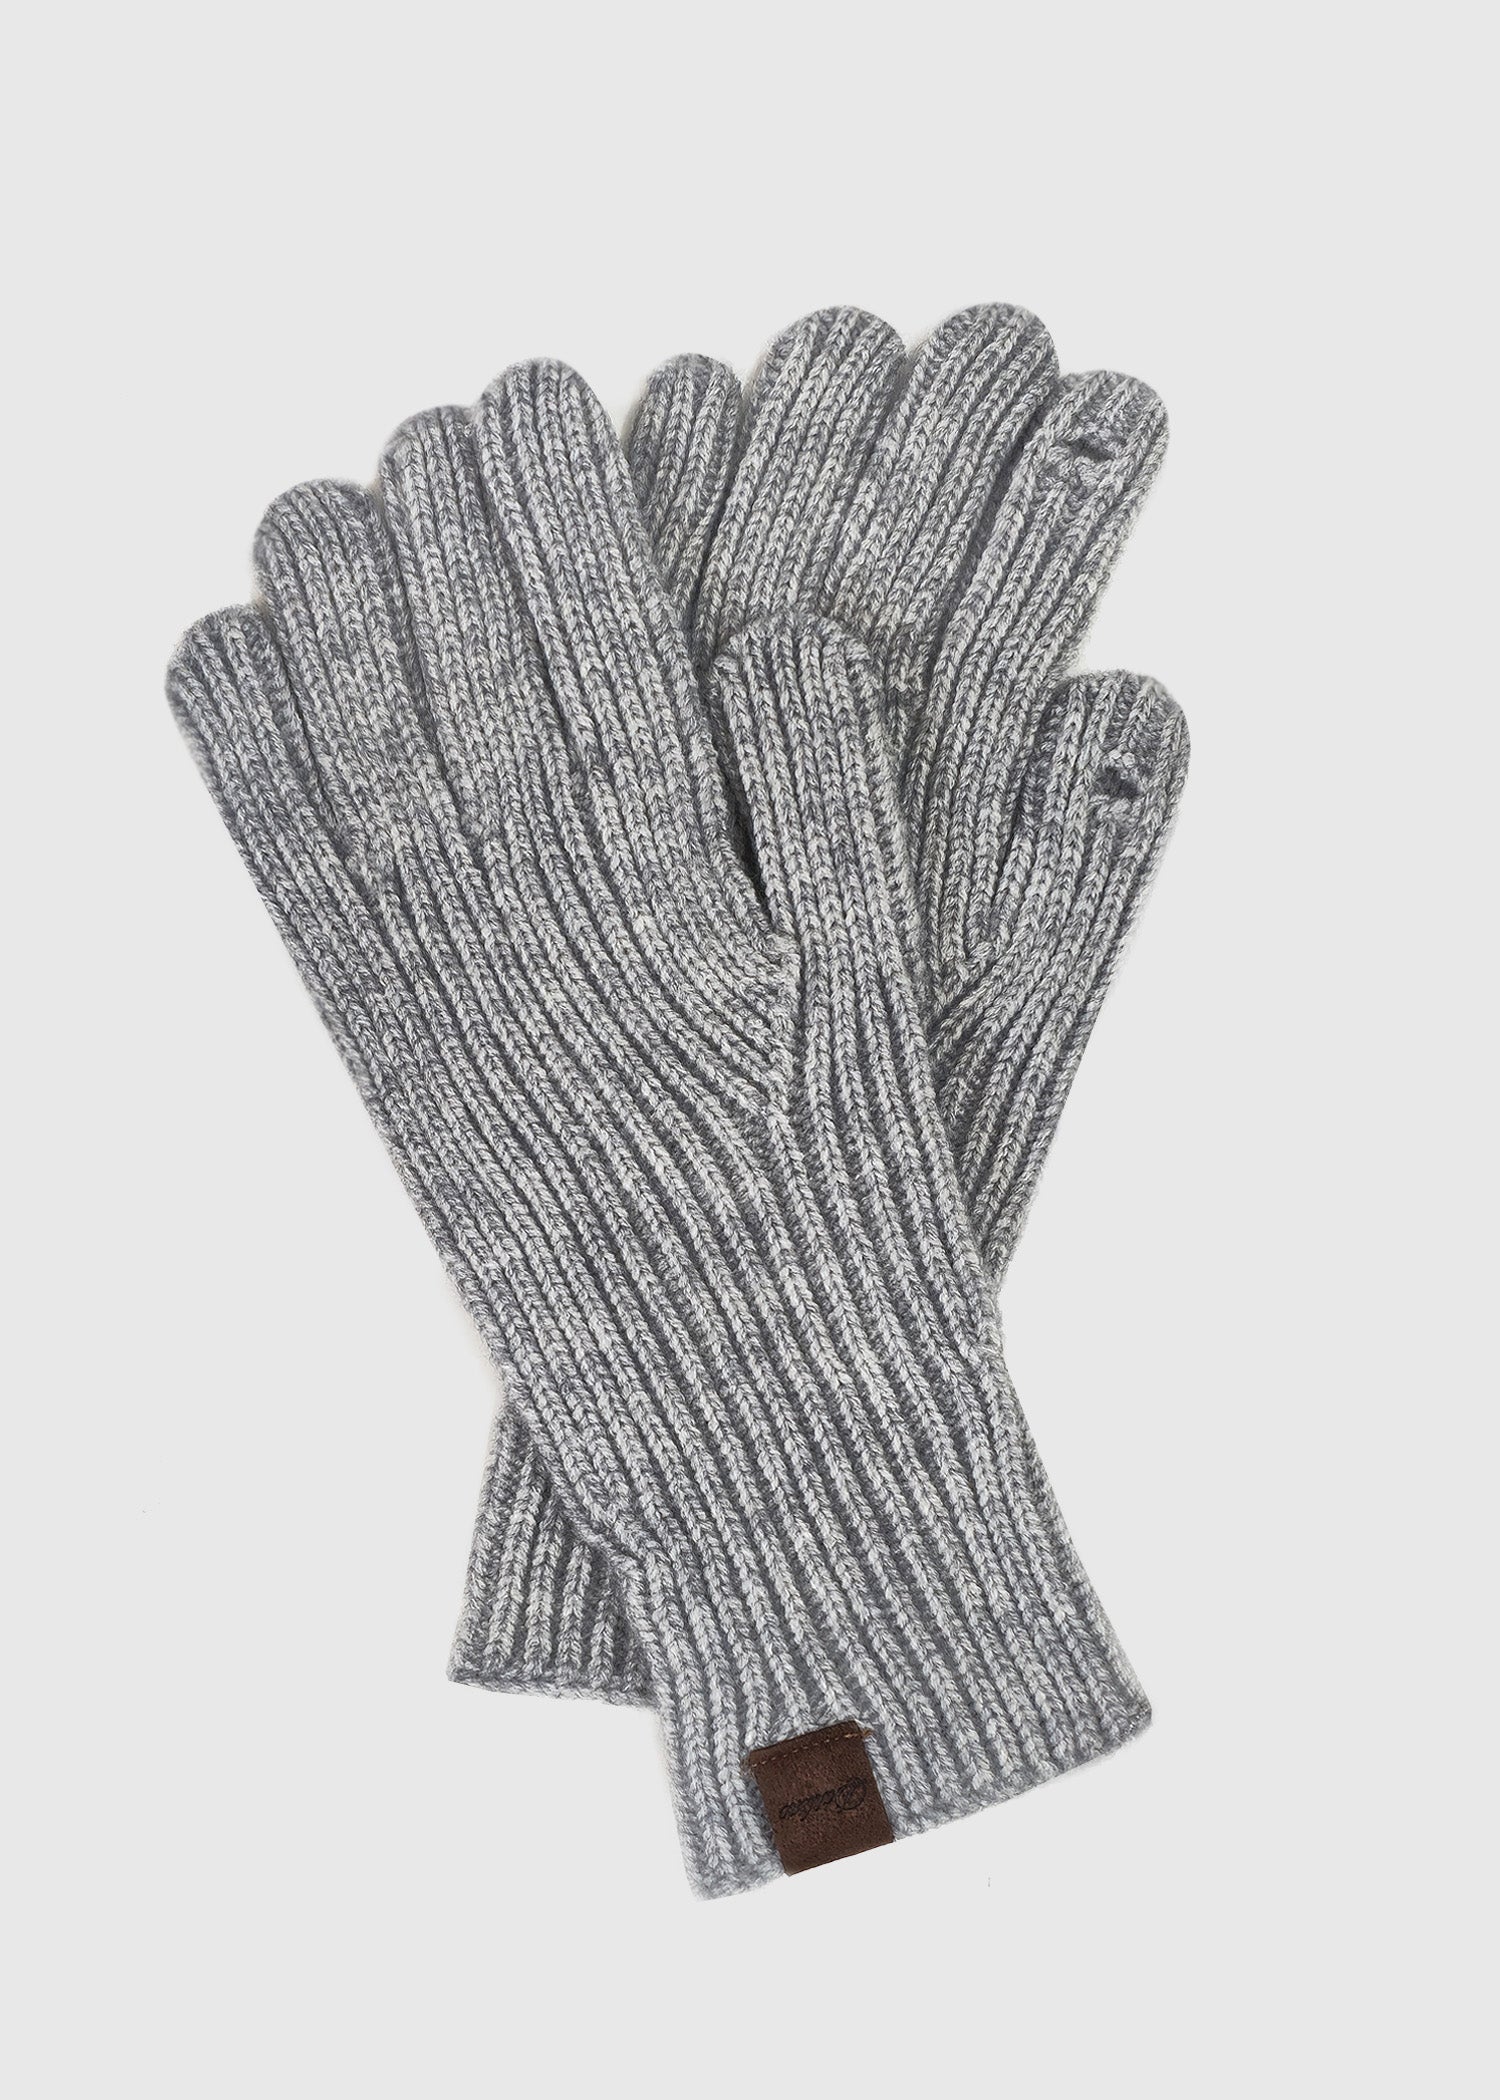 DARLENE Finger Hole Gloves – A R I A